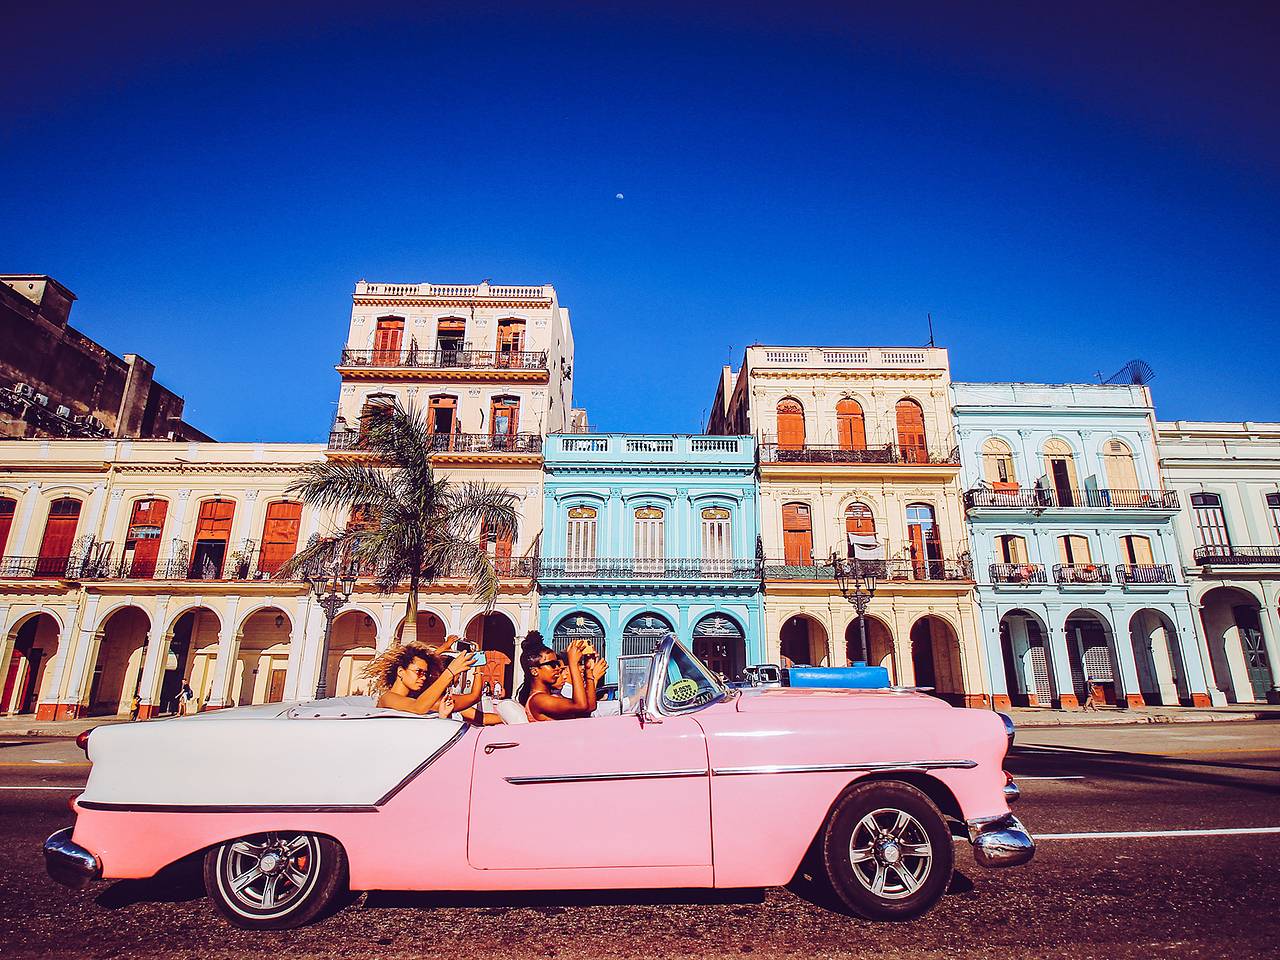 Секс-туризм на Кубу, для мужчин и для женщин. Лайфхаки и реальность | Пикабу